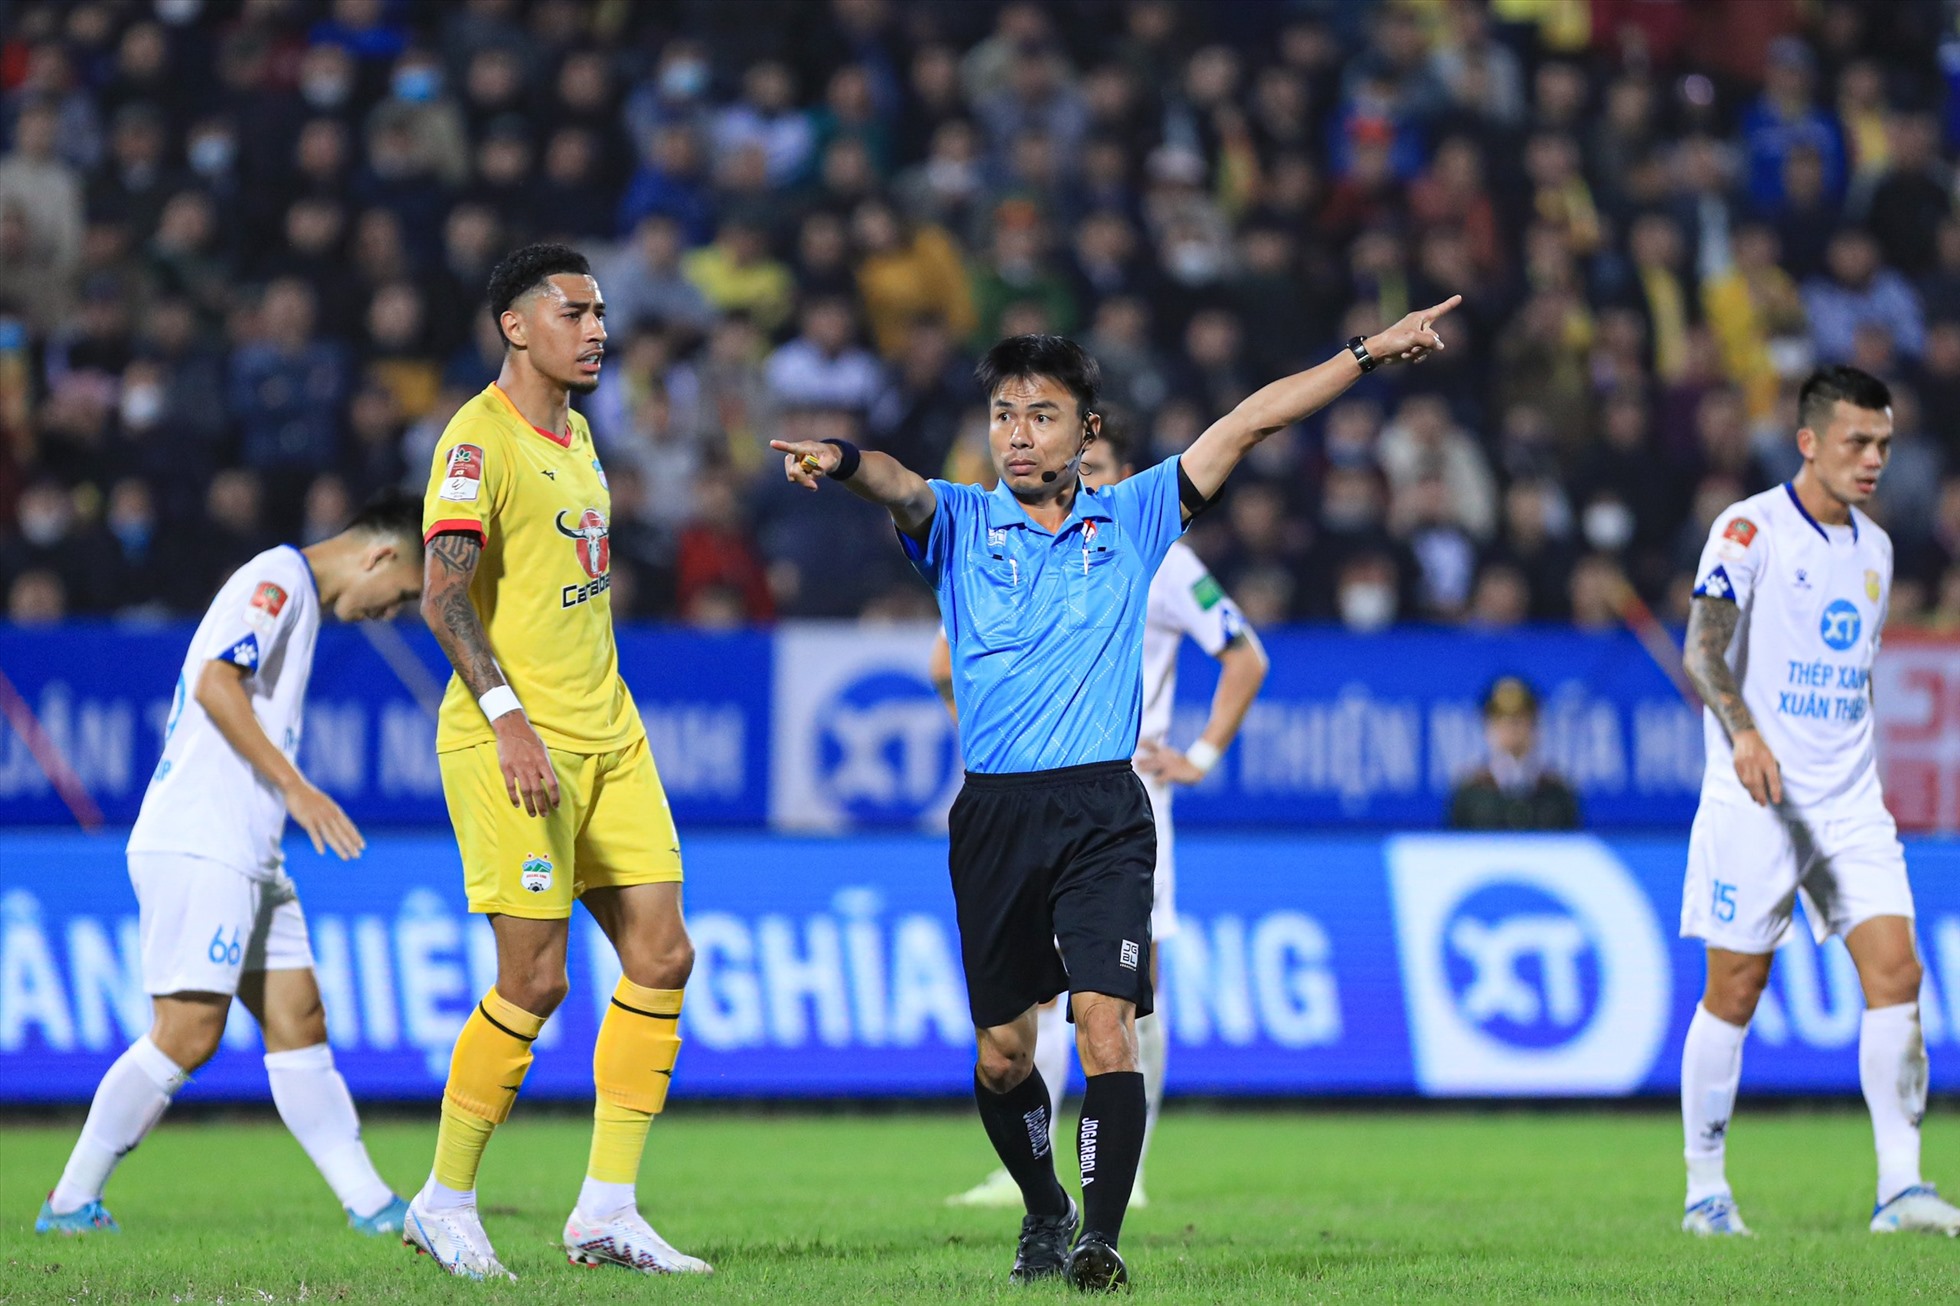 Tuy nhiên trọng tài chính Trương Hồng Vũ không công nhận bàn thắng do trước đó, Đinh Thanh Bình đã phạm lỗi kéo sau hậu vệ chủ nhà.